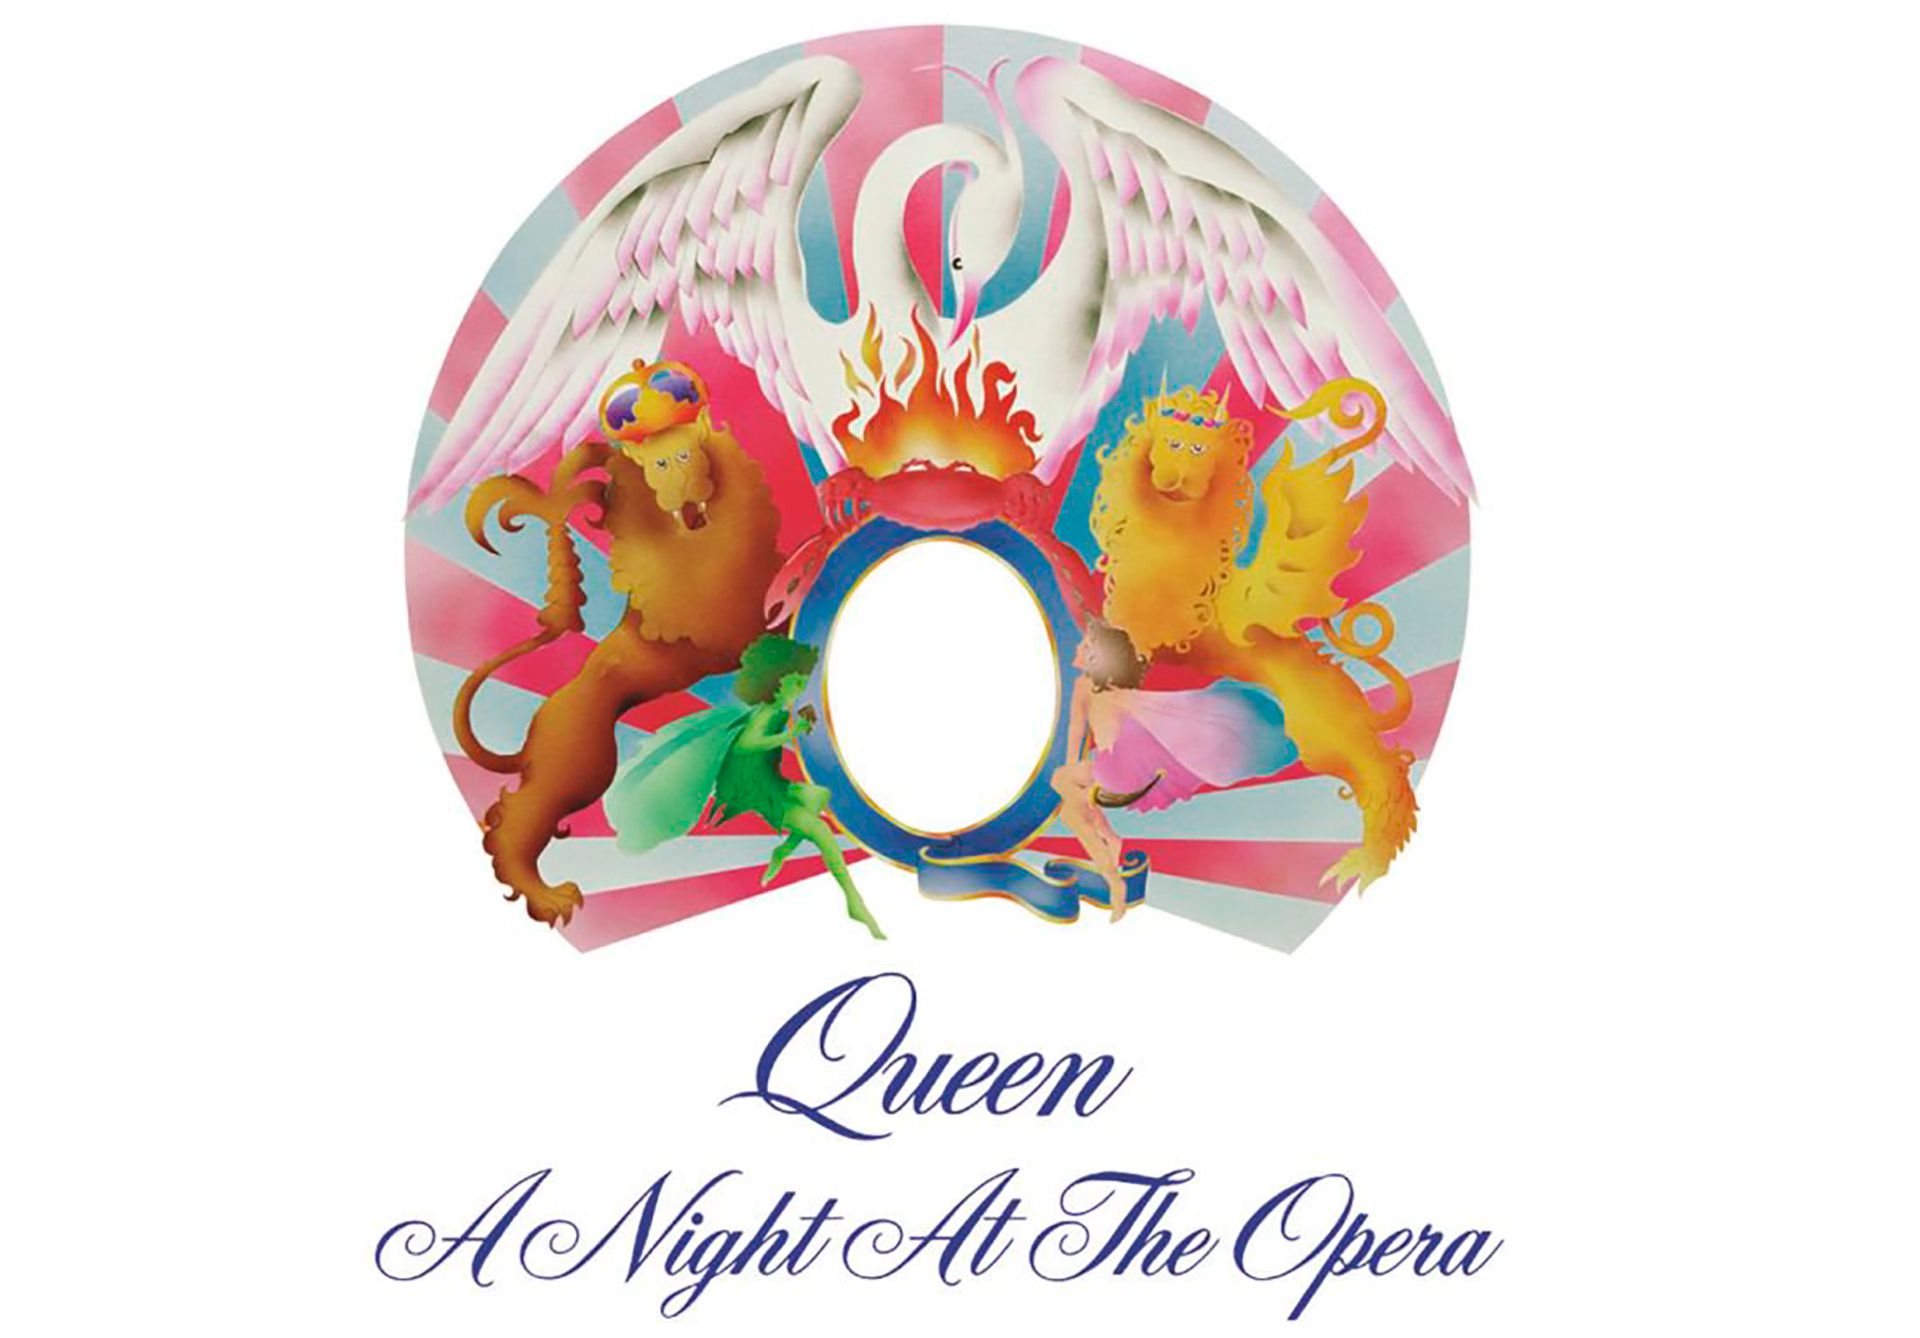 Debido a la delirante grabación de "Bohemian Rhapsody", que demandó seis estudios de sonido, A Night at the Opera fue el disco más caro del rock hasta ese momento.